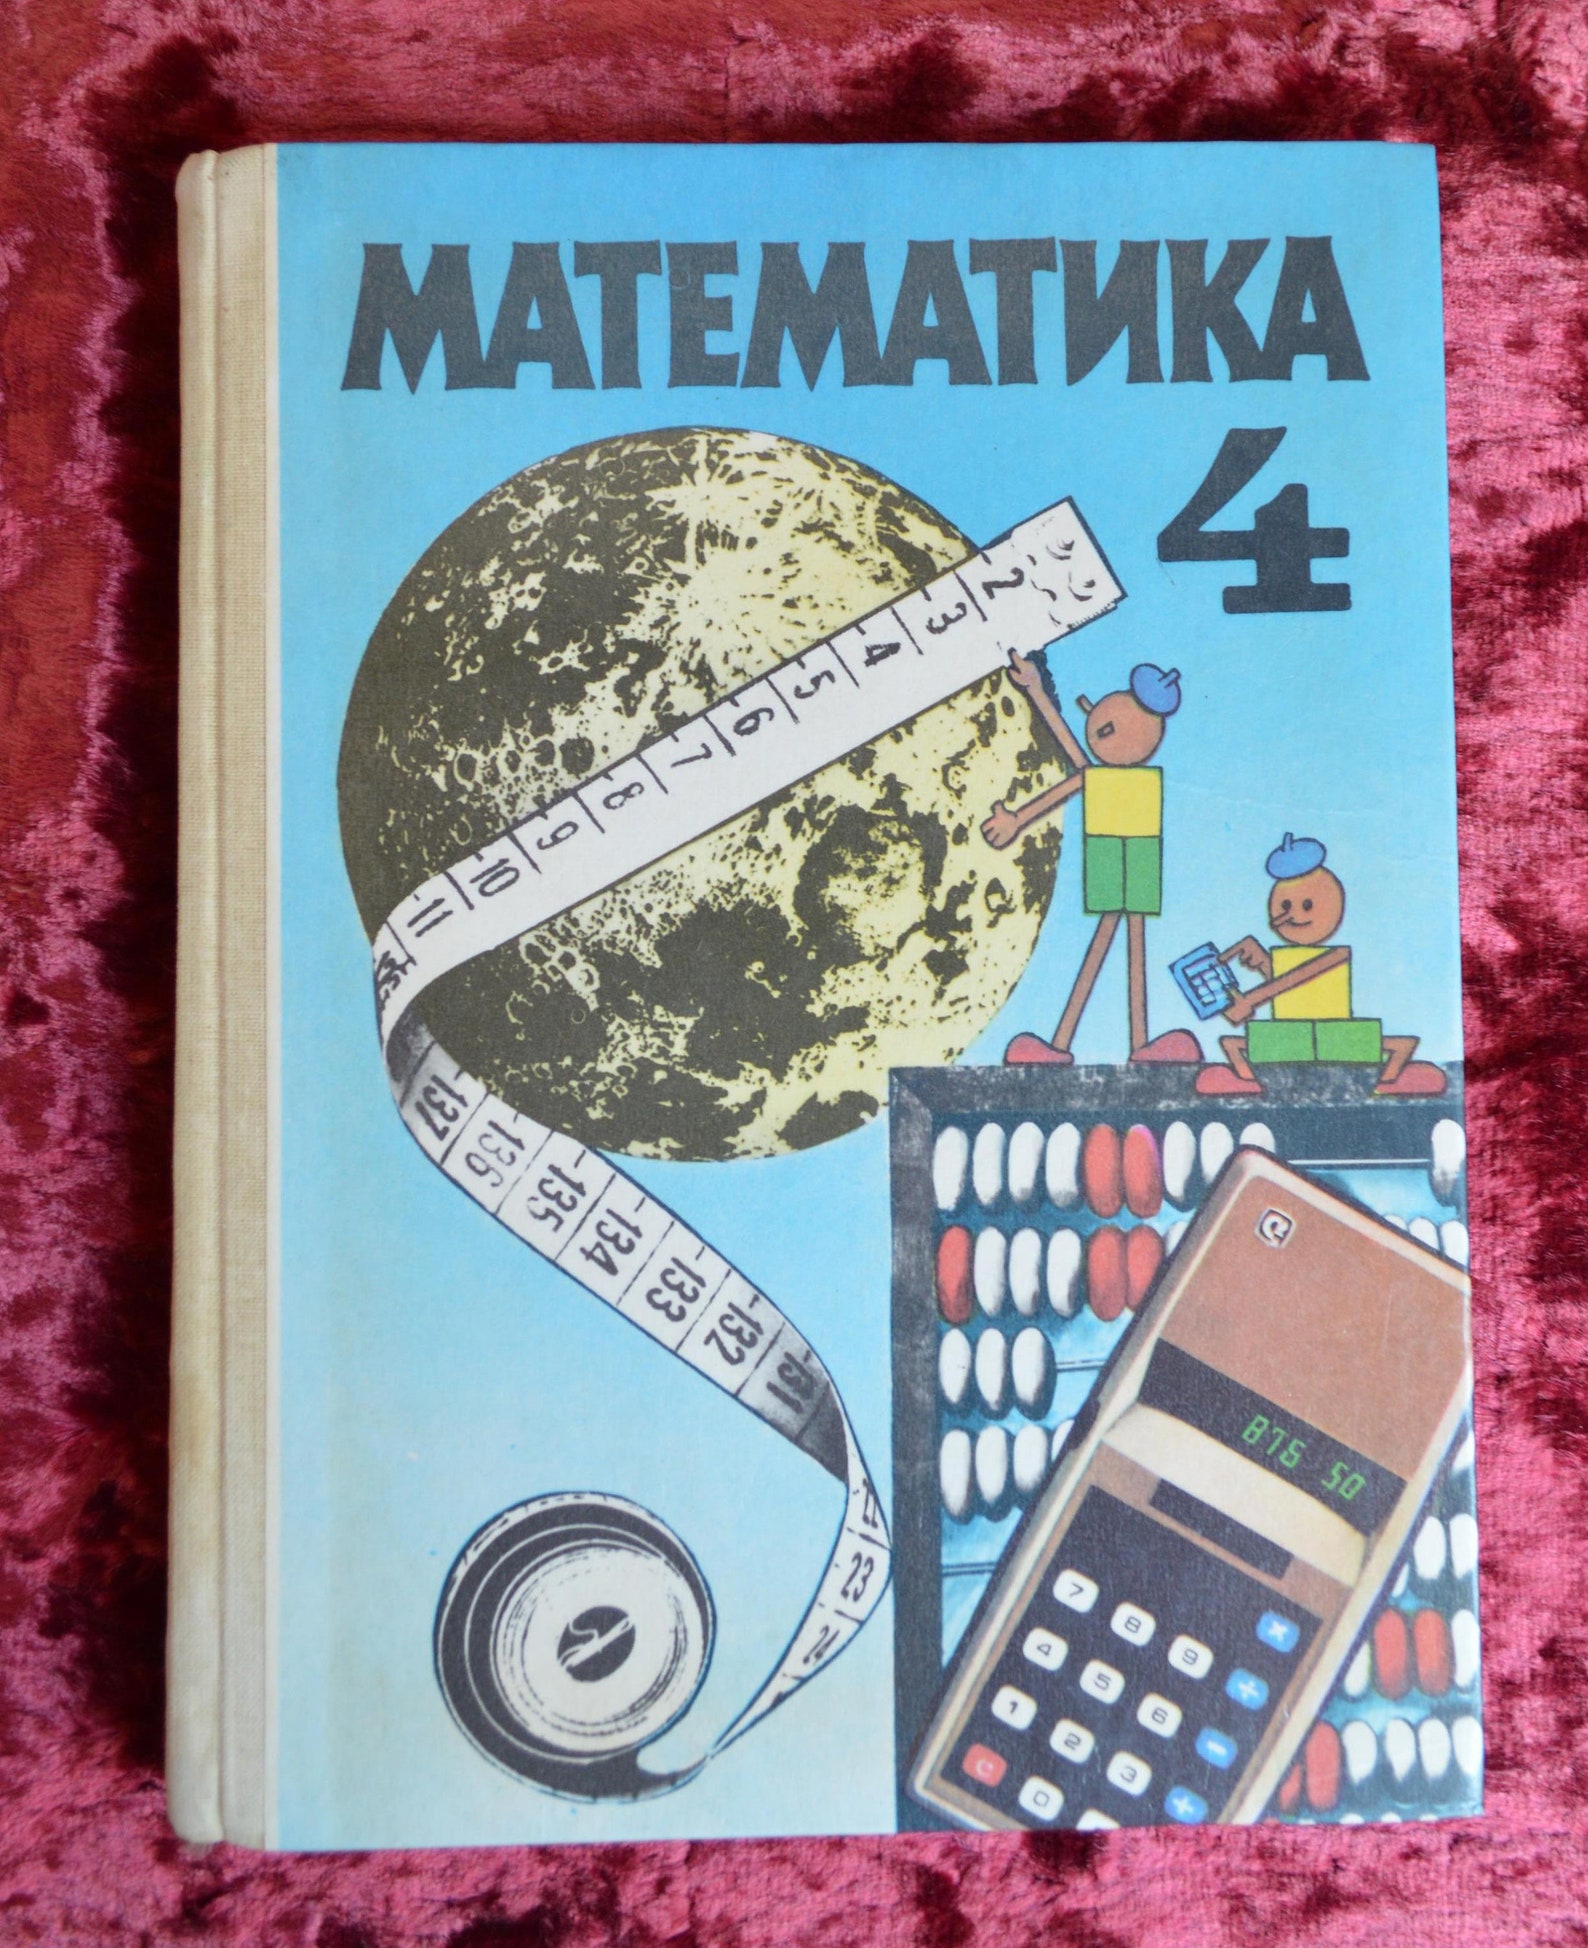 Учебник математики СССР. Учебник по математике 1990 года. Учебник математике 4 класс 1990 года. Математика 4 класс СССР учебник. Полный учебник по математике